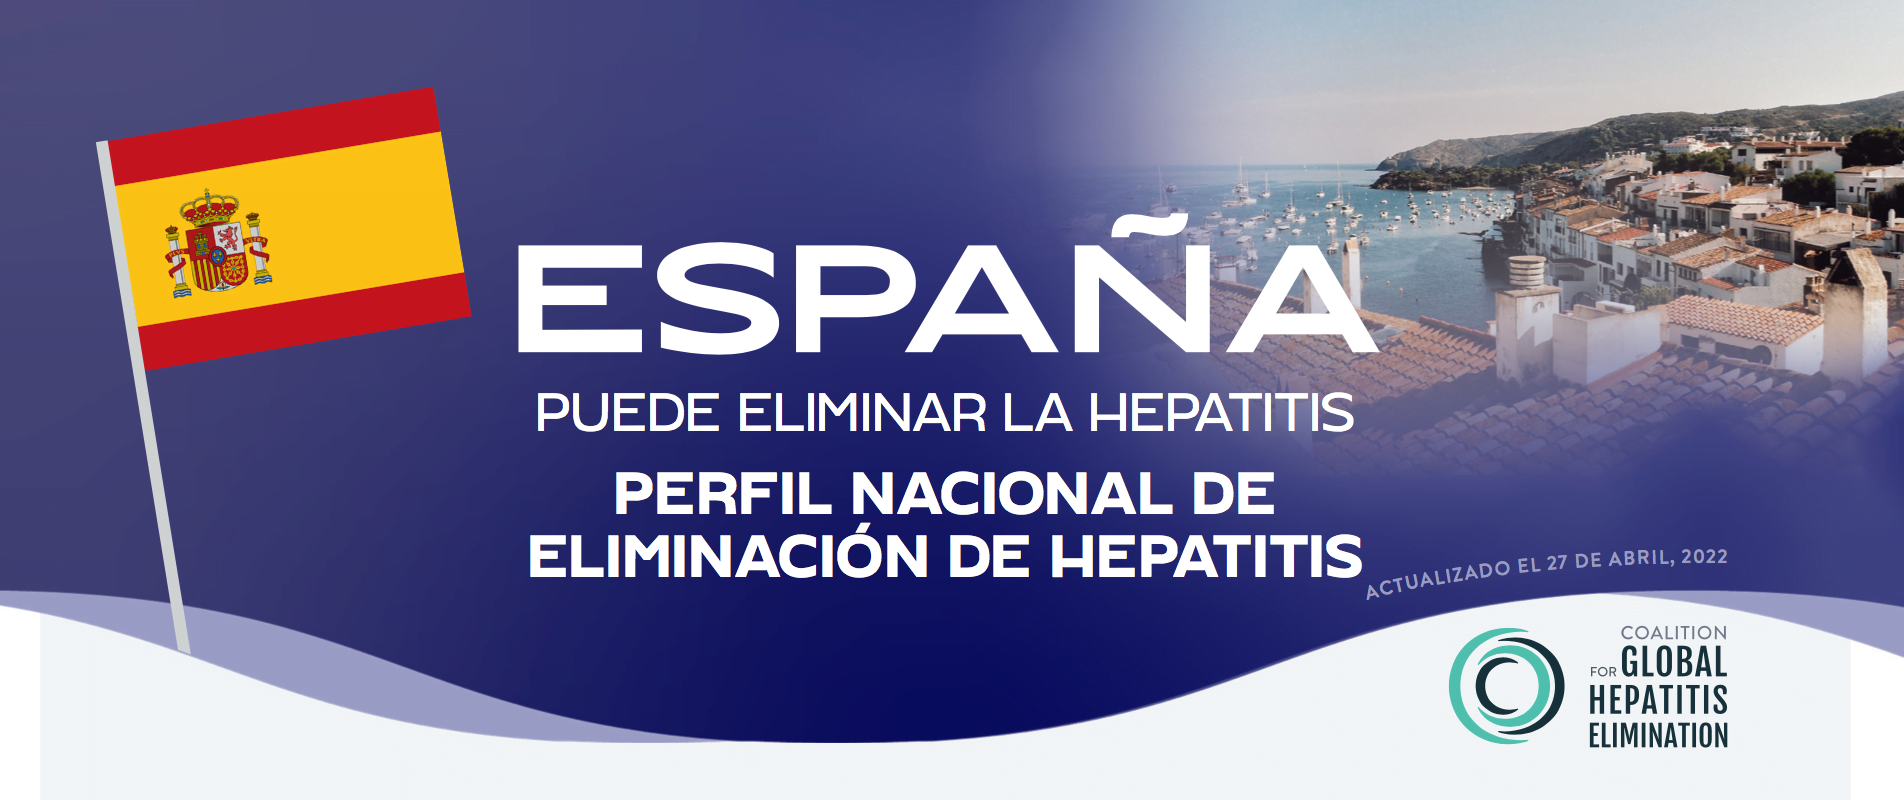 Informe: “Perfil nacional de eliminación de hepatitis. España puede eliminar la hepatitis”